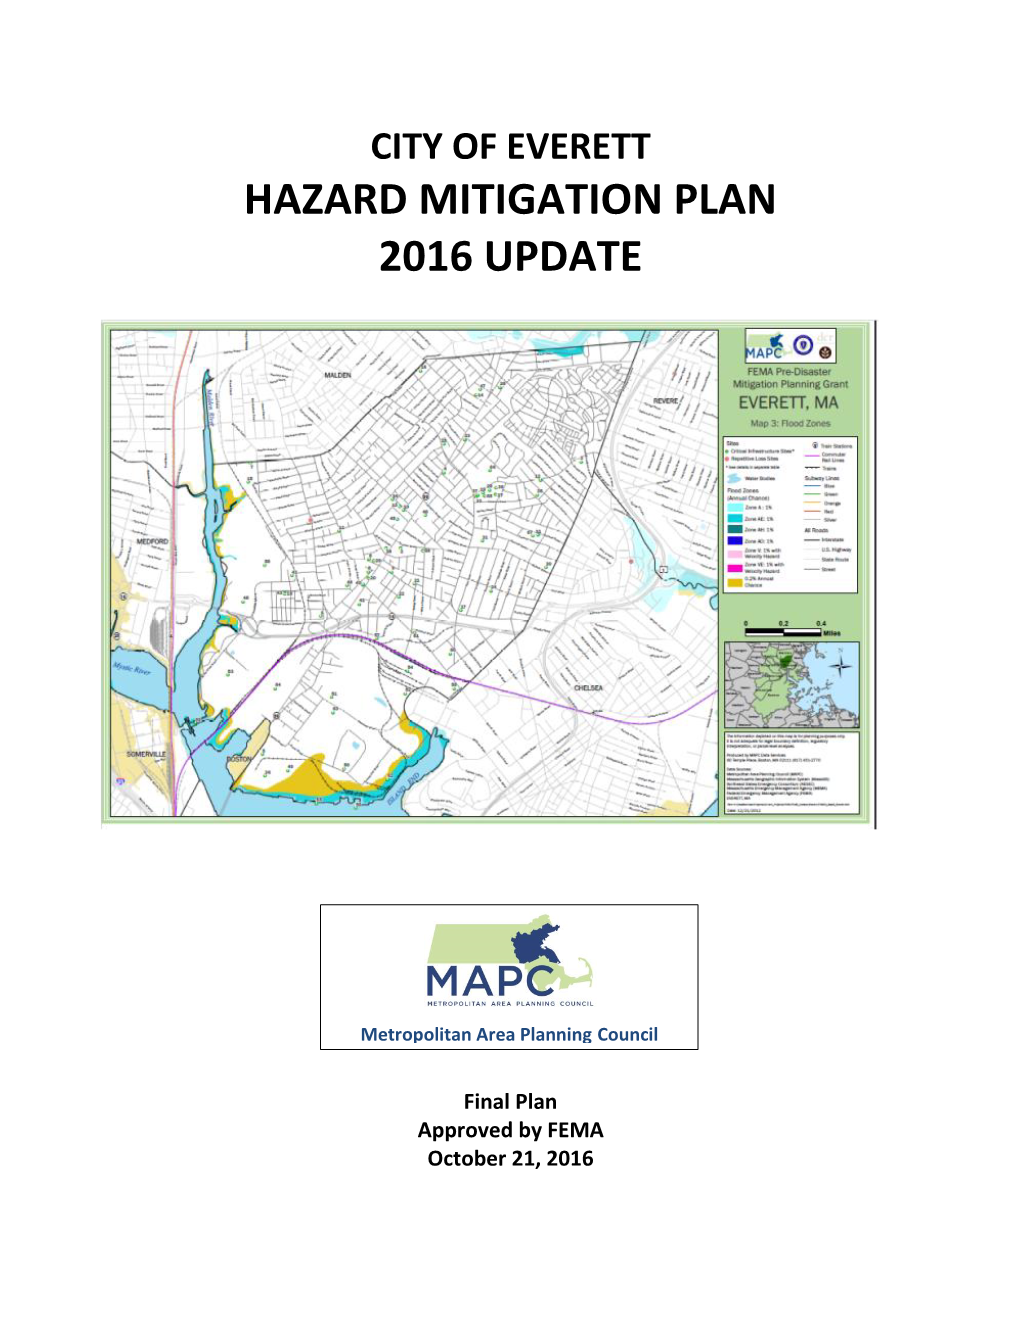 Hazard Mitigation Plan 2016 Update